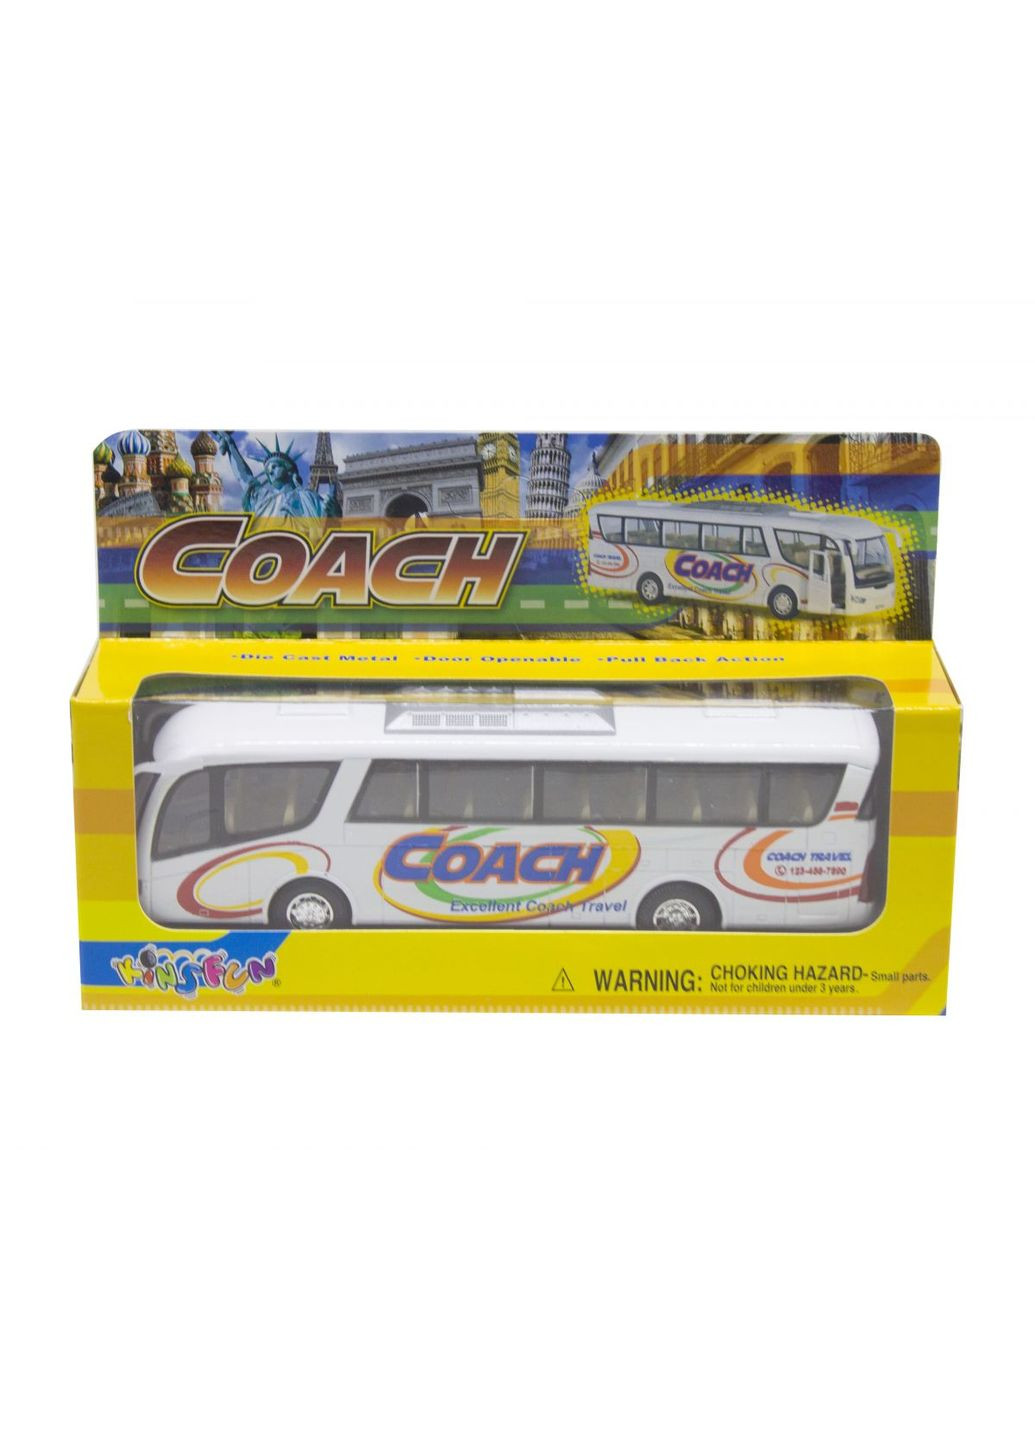 Інерційний автобус "Coach" (білий) MIC (293083046)